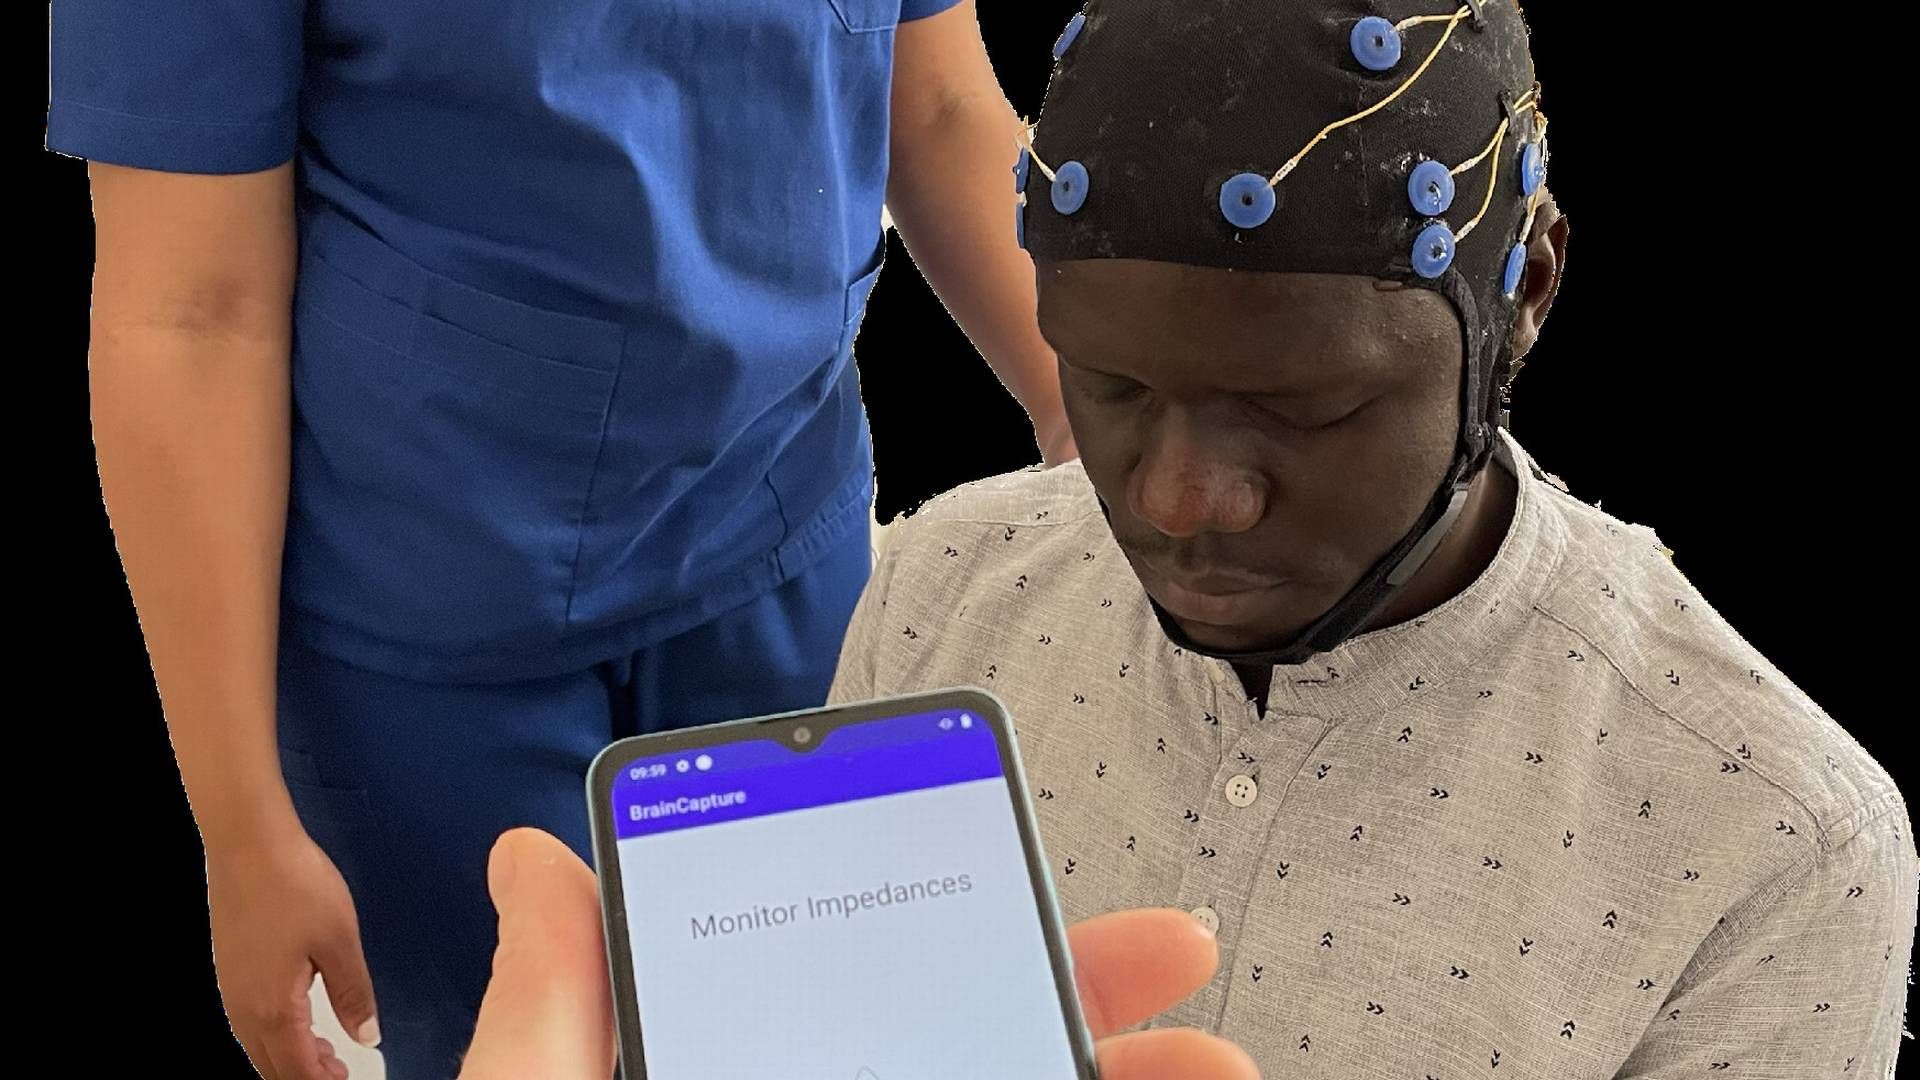 Alene i Afrika og Asien er der et udækket behov for 50 millioner EEG-scanninger om året svarende til et marked på 2 mia. dollar. | Foto: Braincapture / Pr